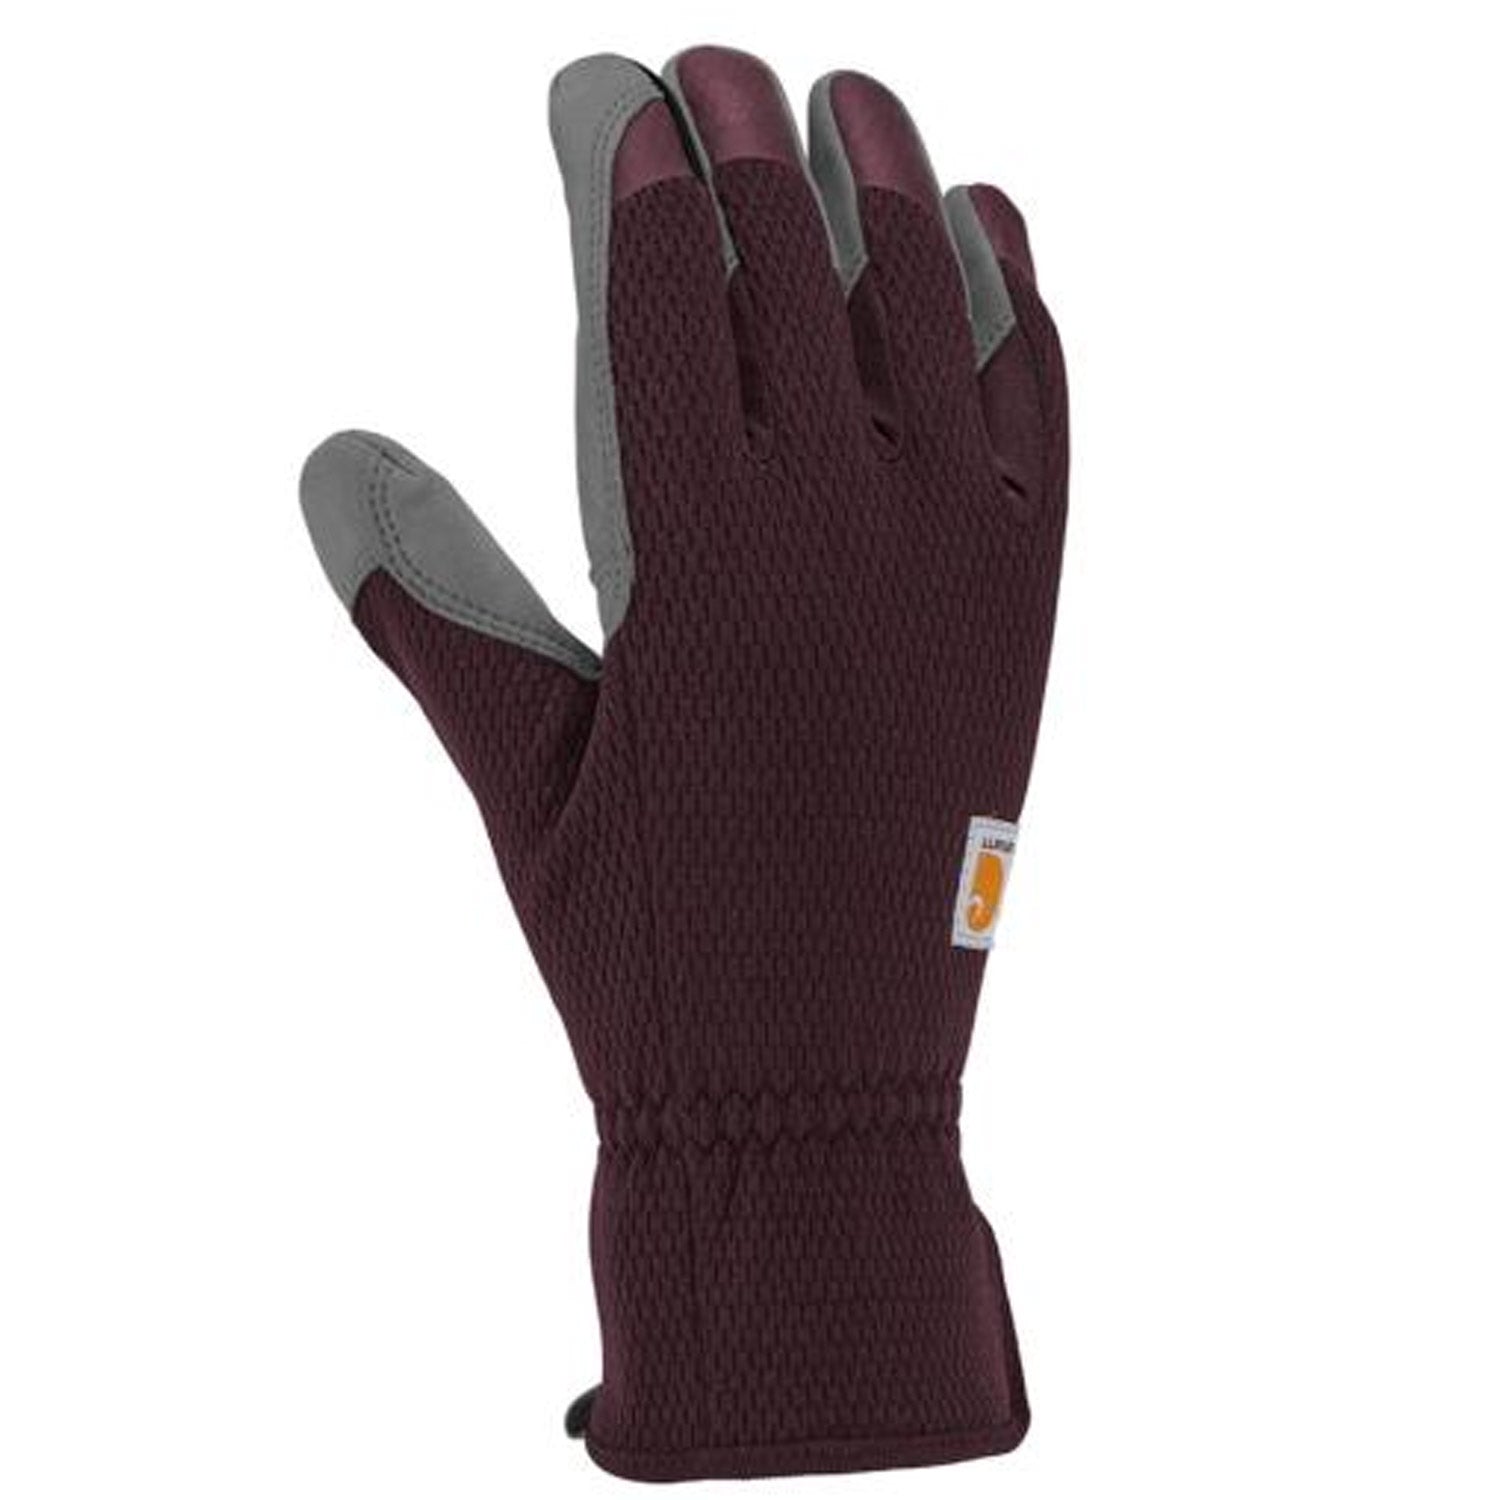 Carhartt Women's High Dexterity Touch Sensitive Glove - Work World - Workwear, Work Boots, Safety Gear